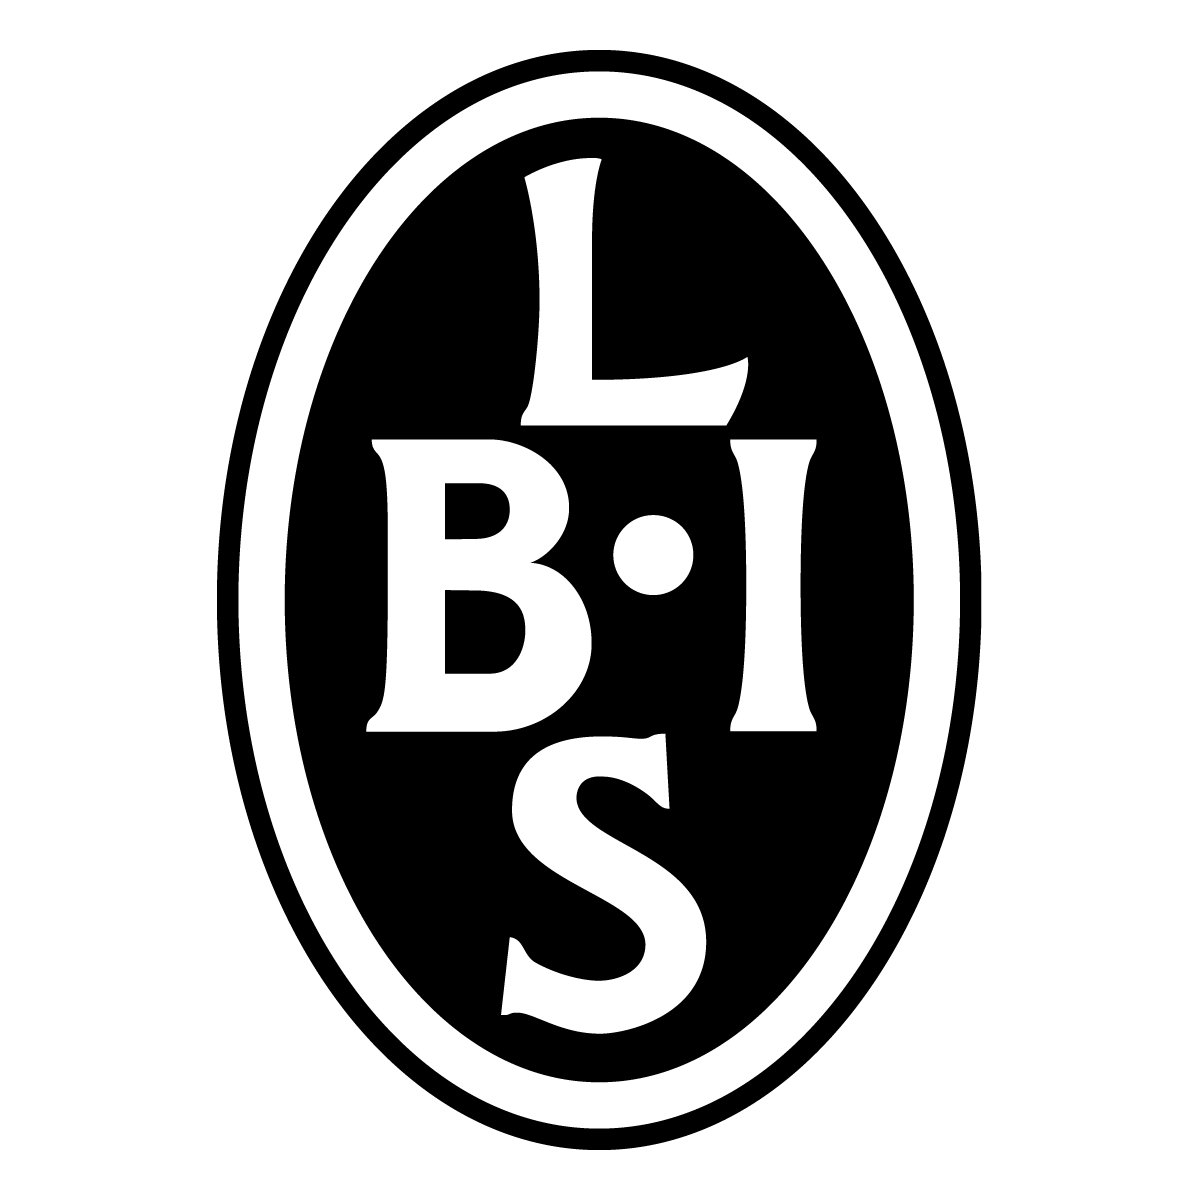 Landskrona BoIS emblem